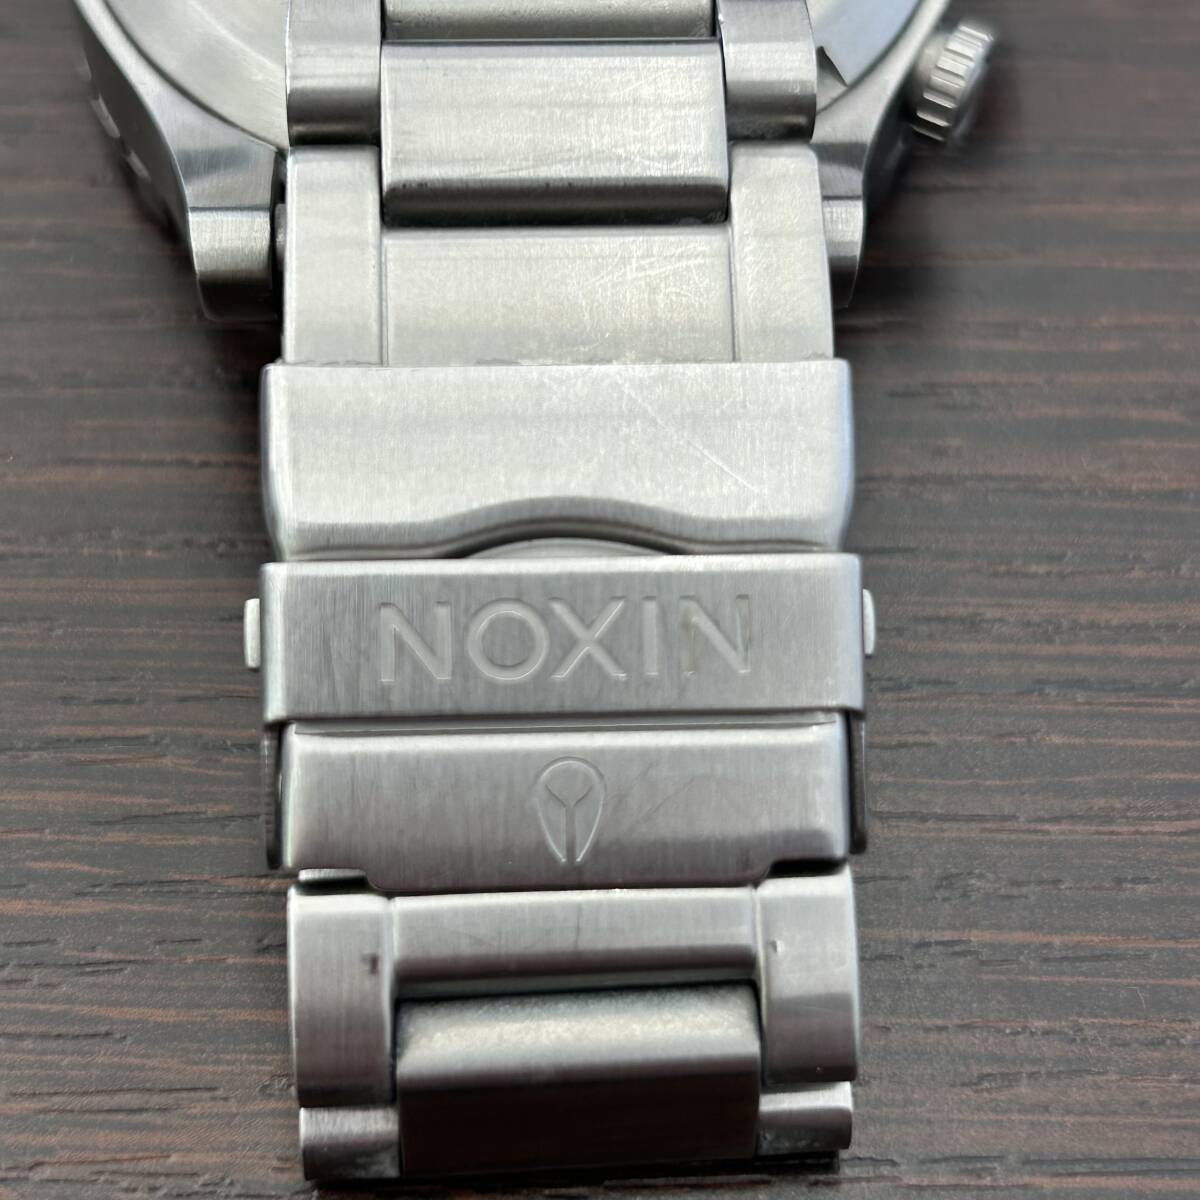 #6495【NIXON】ニクソン 腕時計 THE51-30 クロノグラフ ホワイト×シルバー メンズウォッチ 動作品の画像6